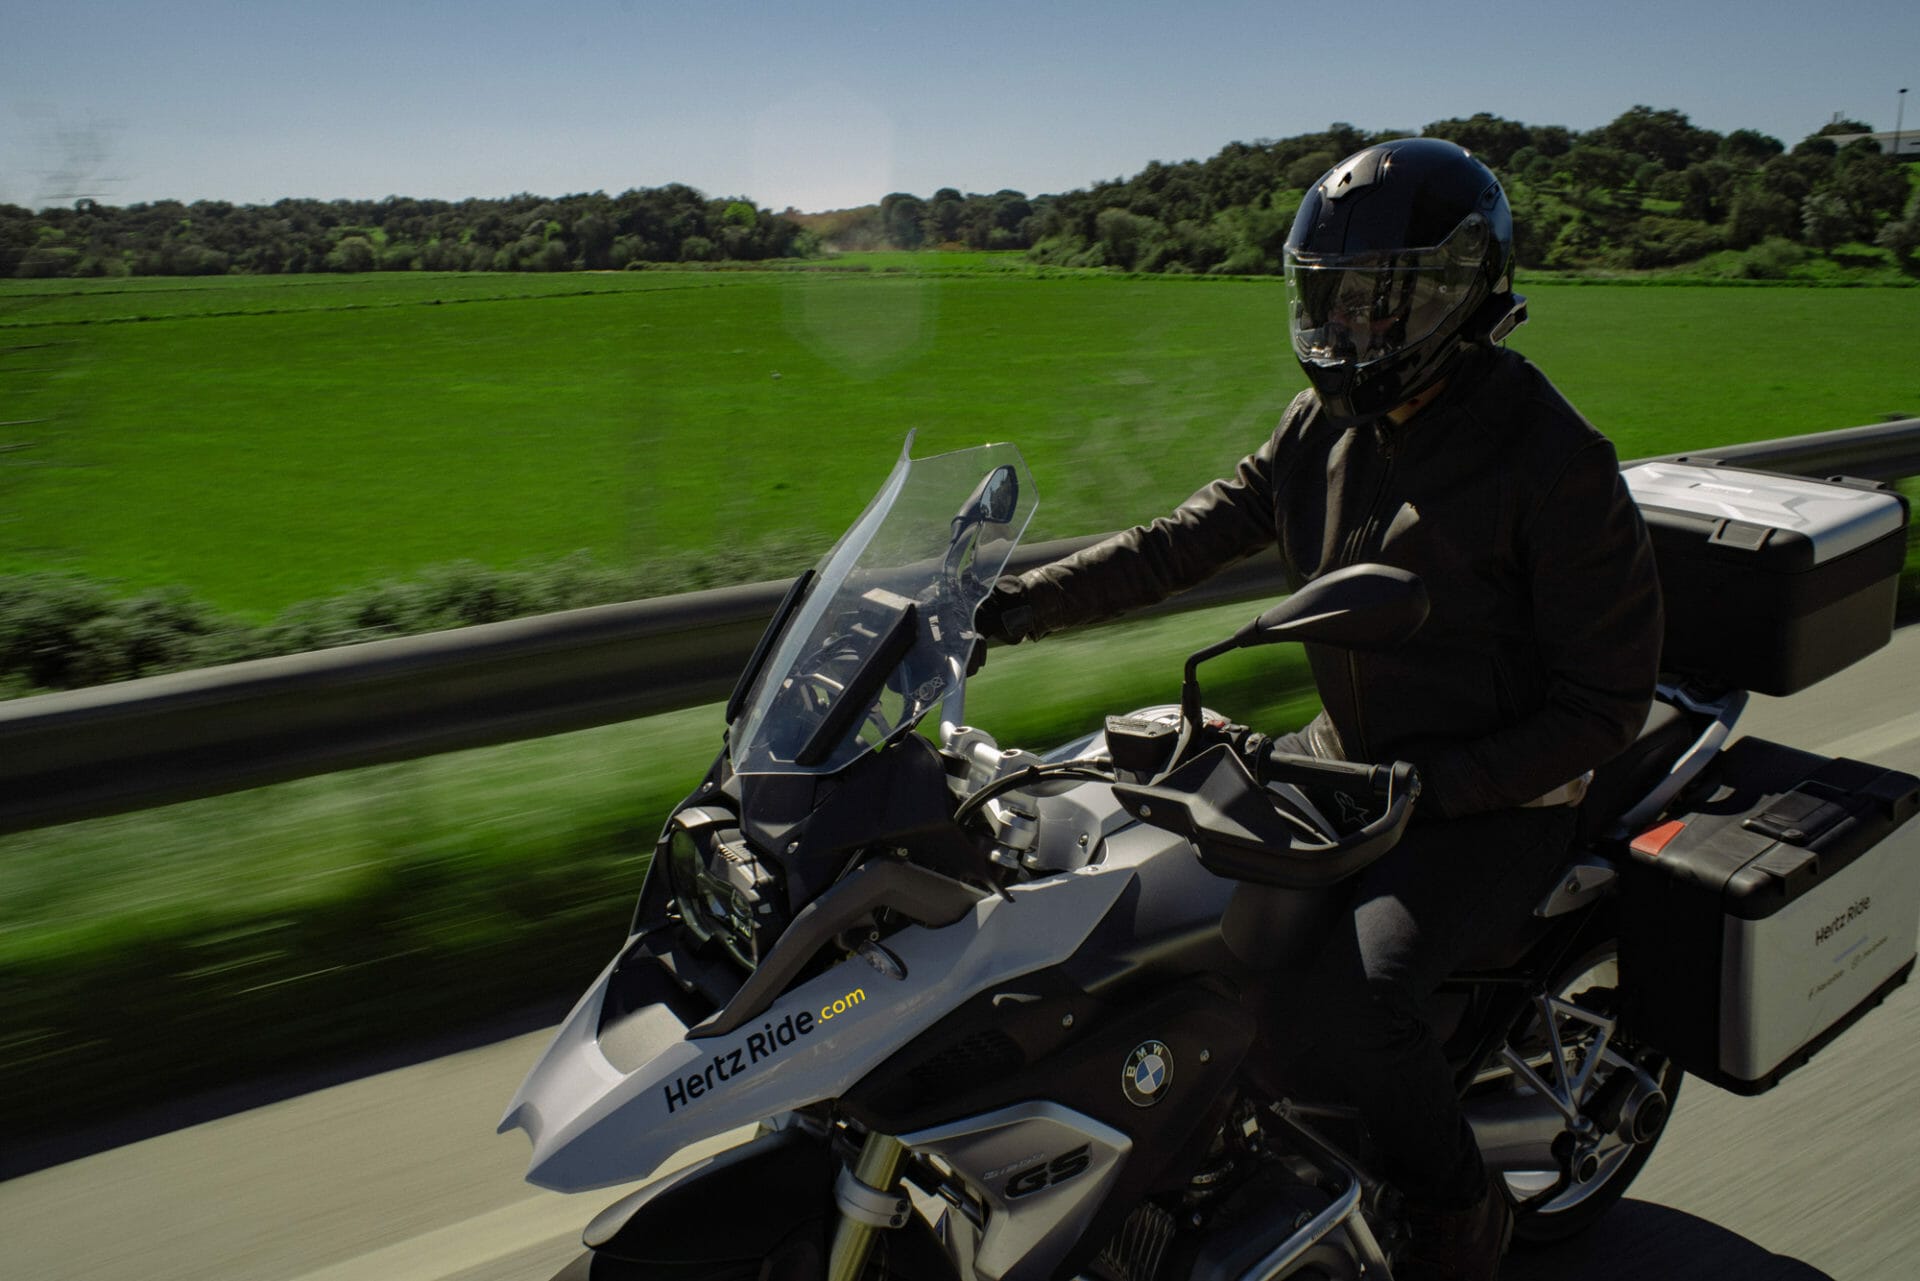 Hertz Ride verleiht jetzt auch in den USA Motorräder